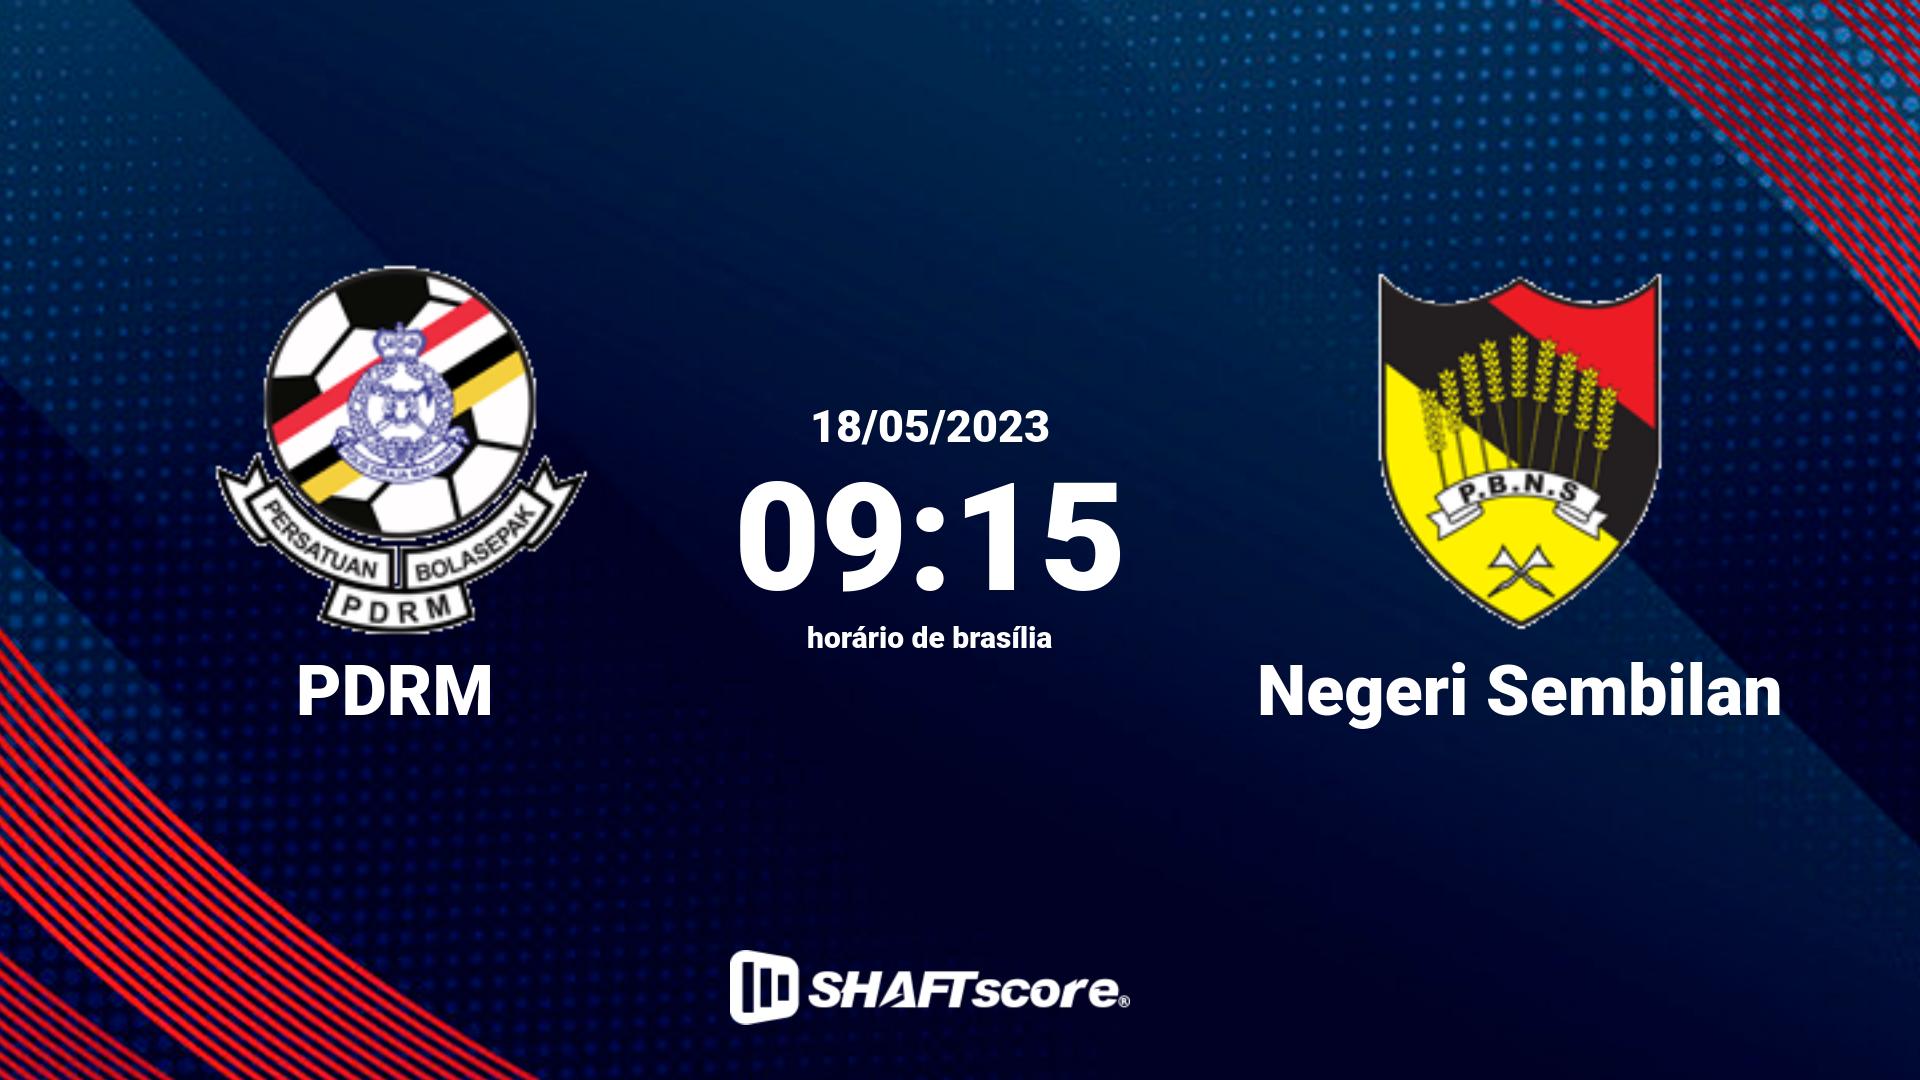 Estatísticas do jogo PDRM vs Negeri Sembilan 18.05 09:15